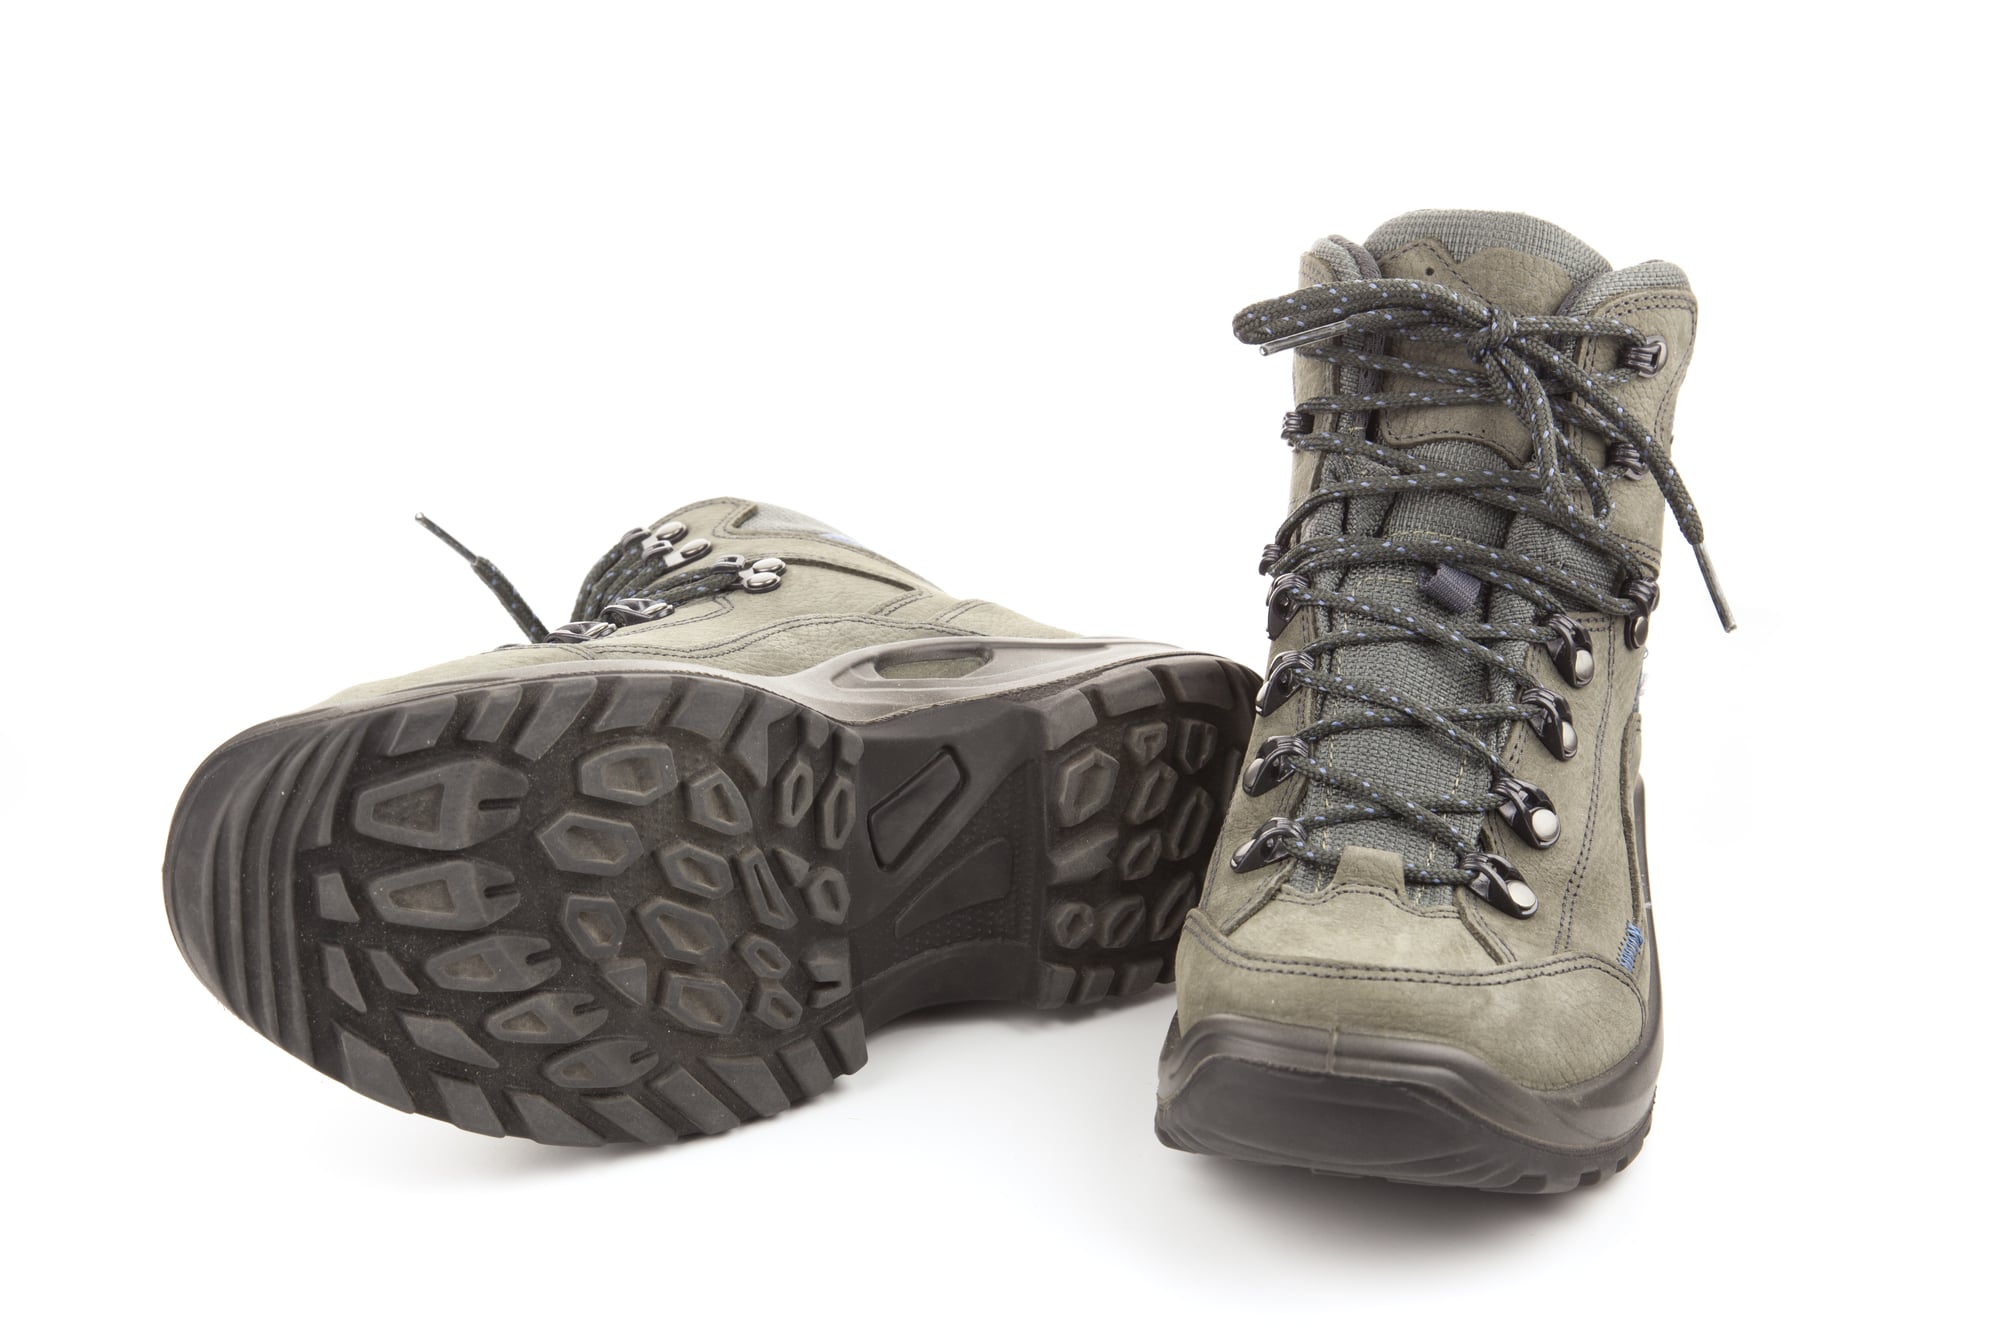 Uitmaken Reusachtig Stamboom Work Boots Resole: When to Resole Boots | NuShoe